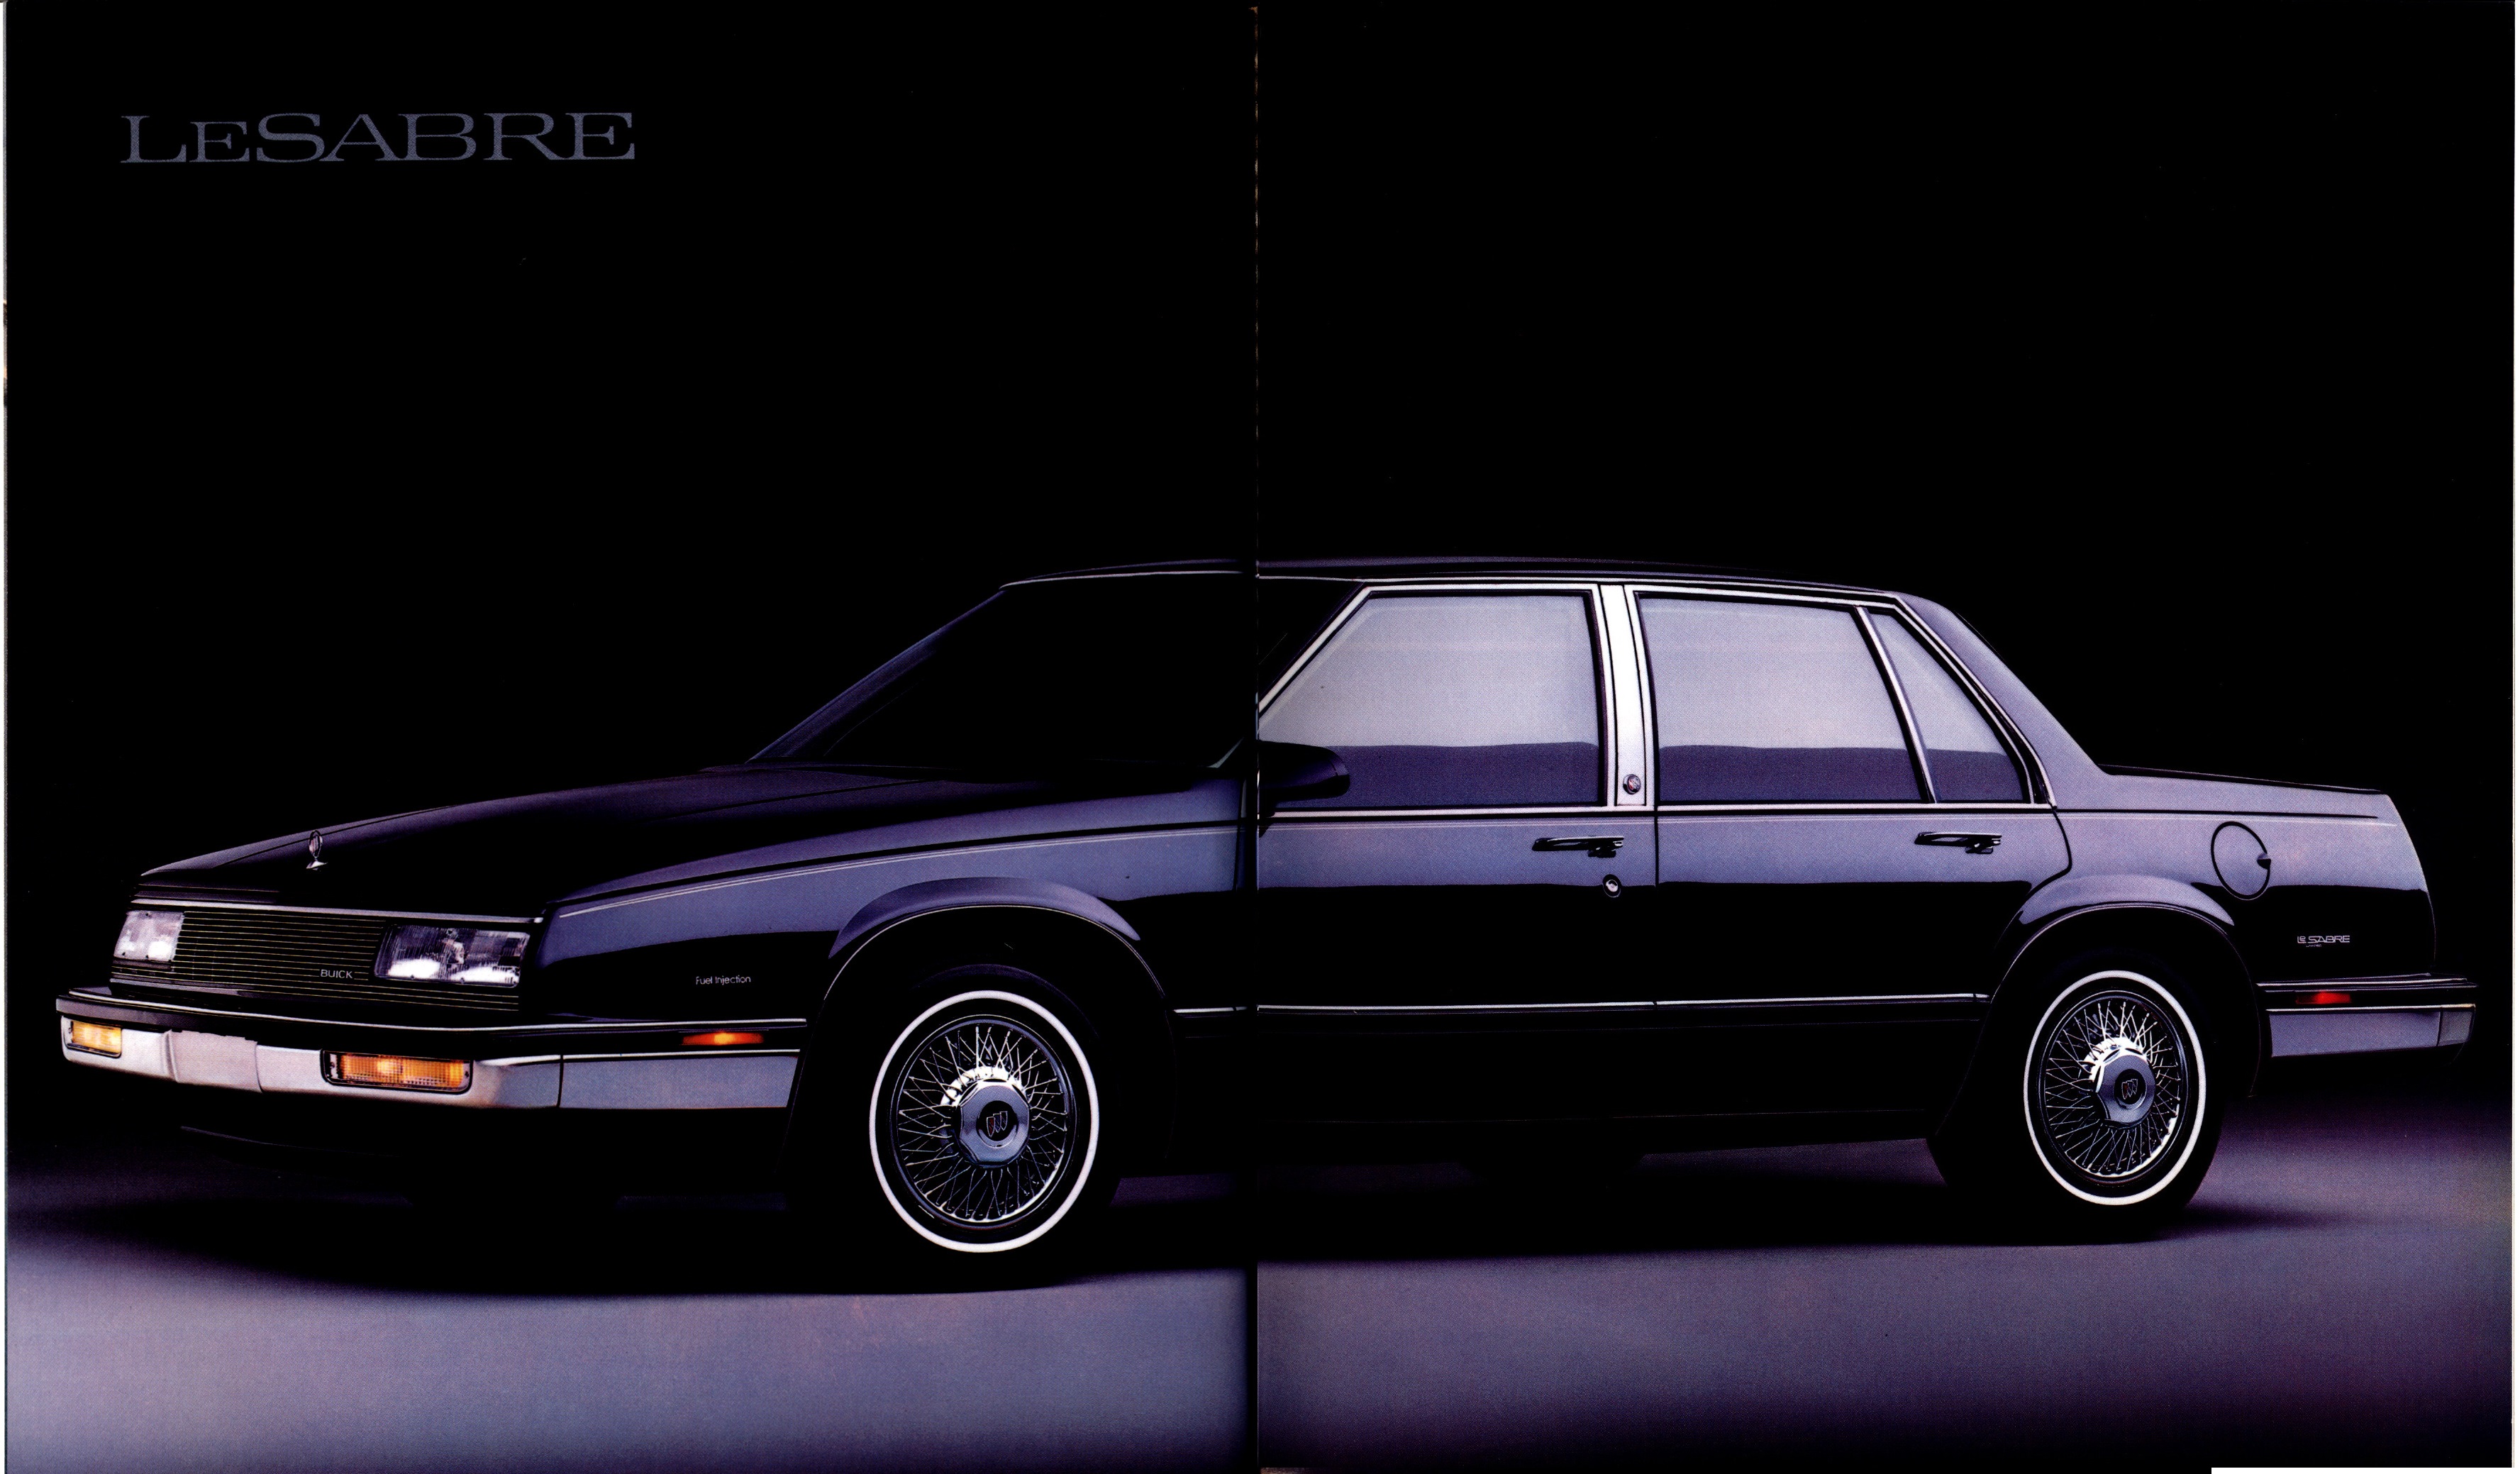 1989 Buick Full Line Prestige-38-39